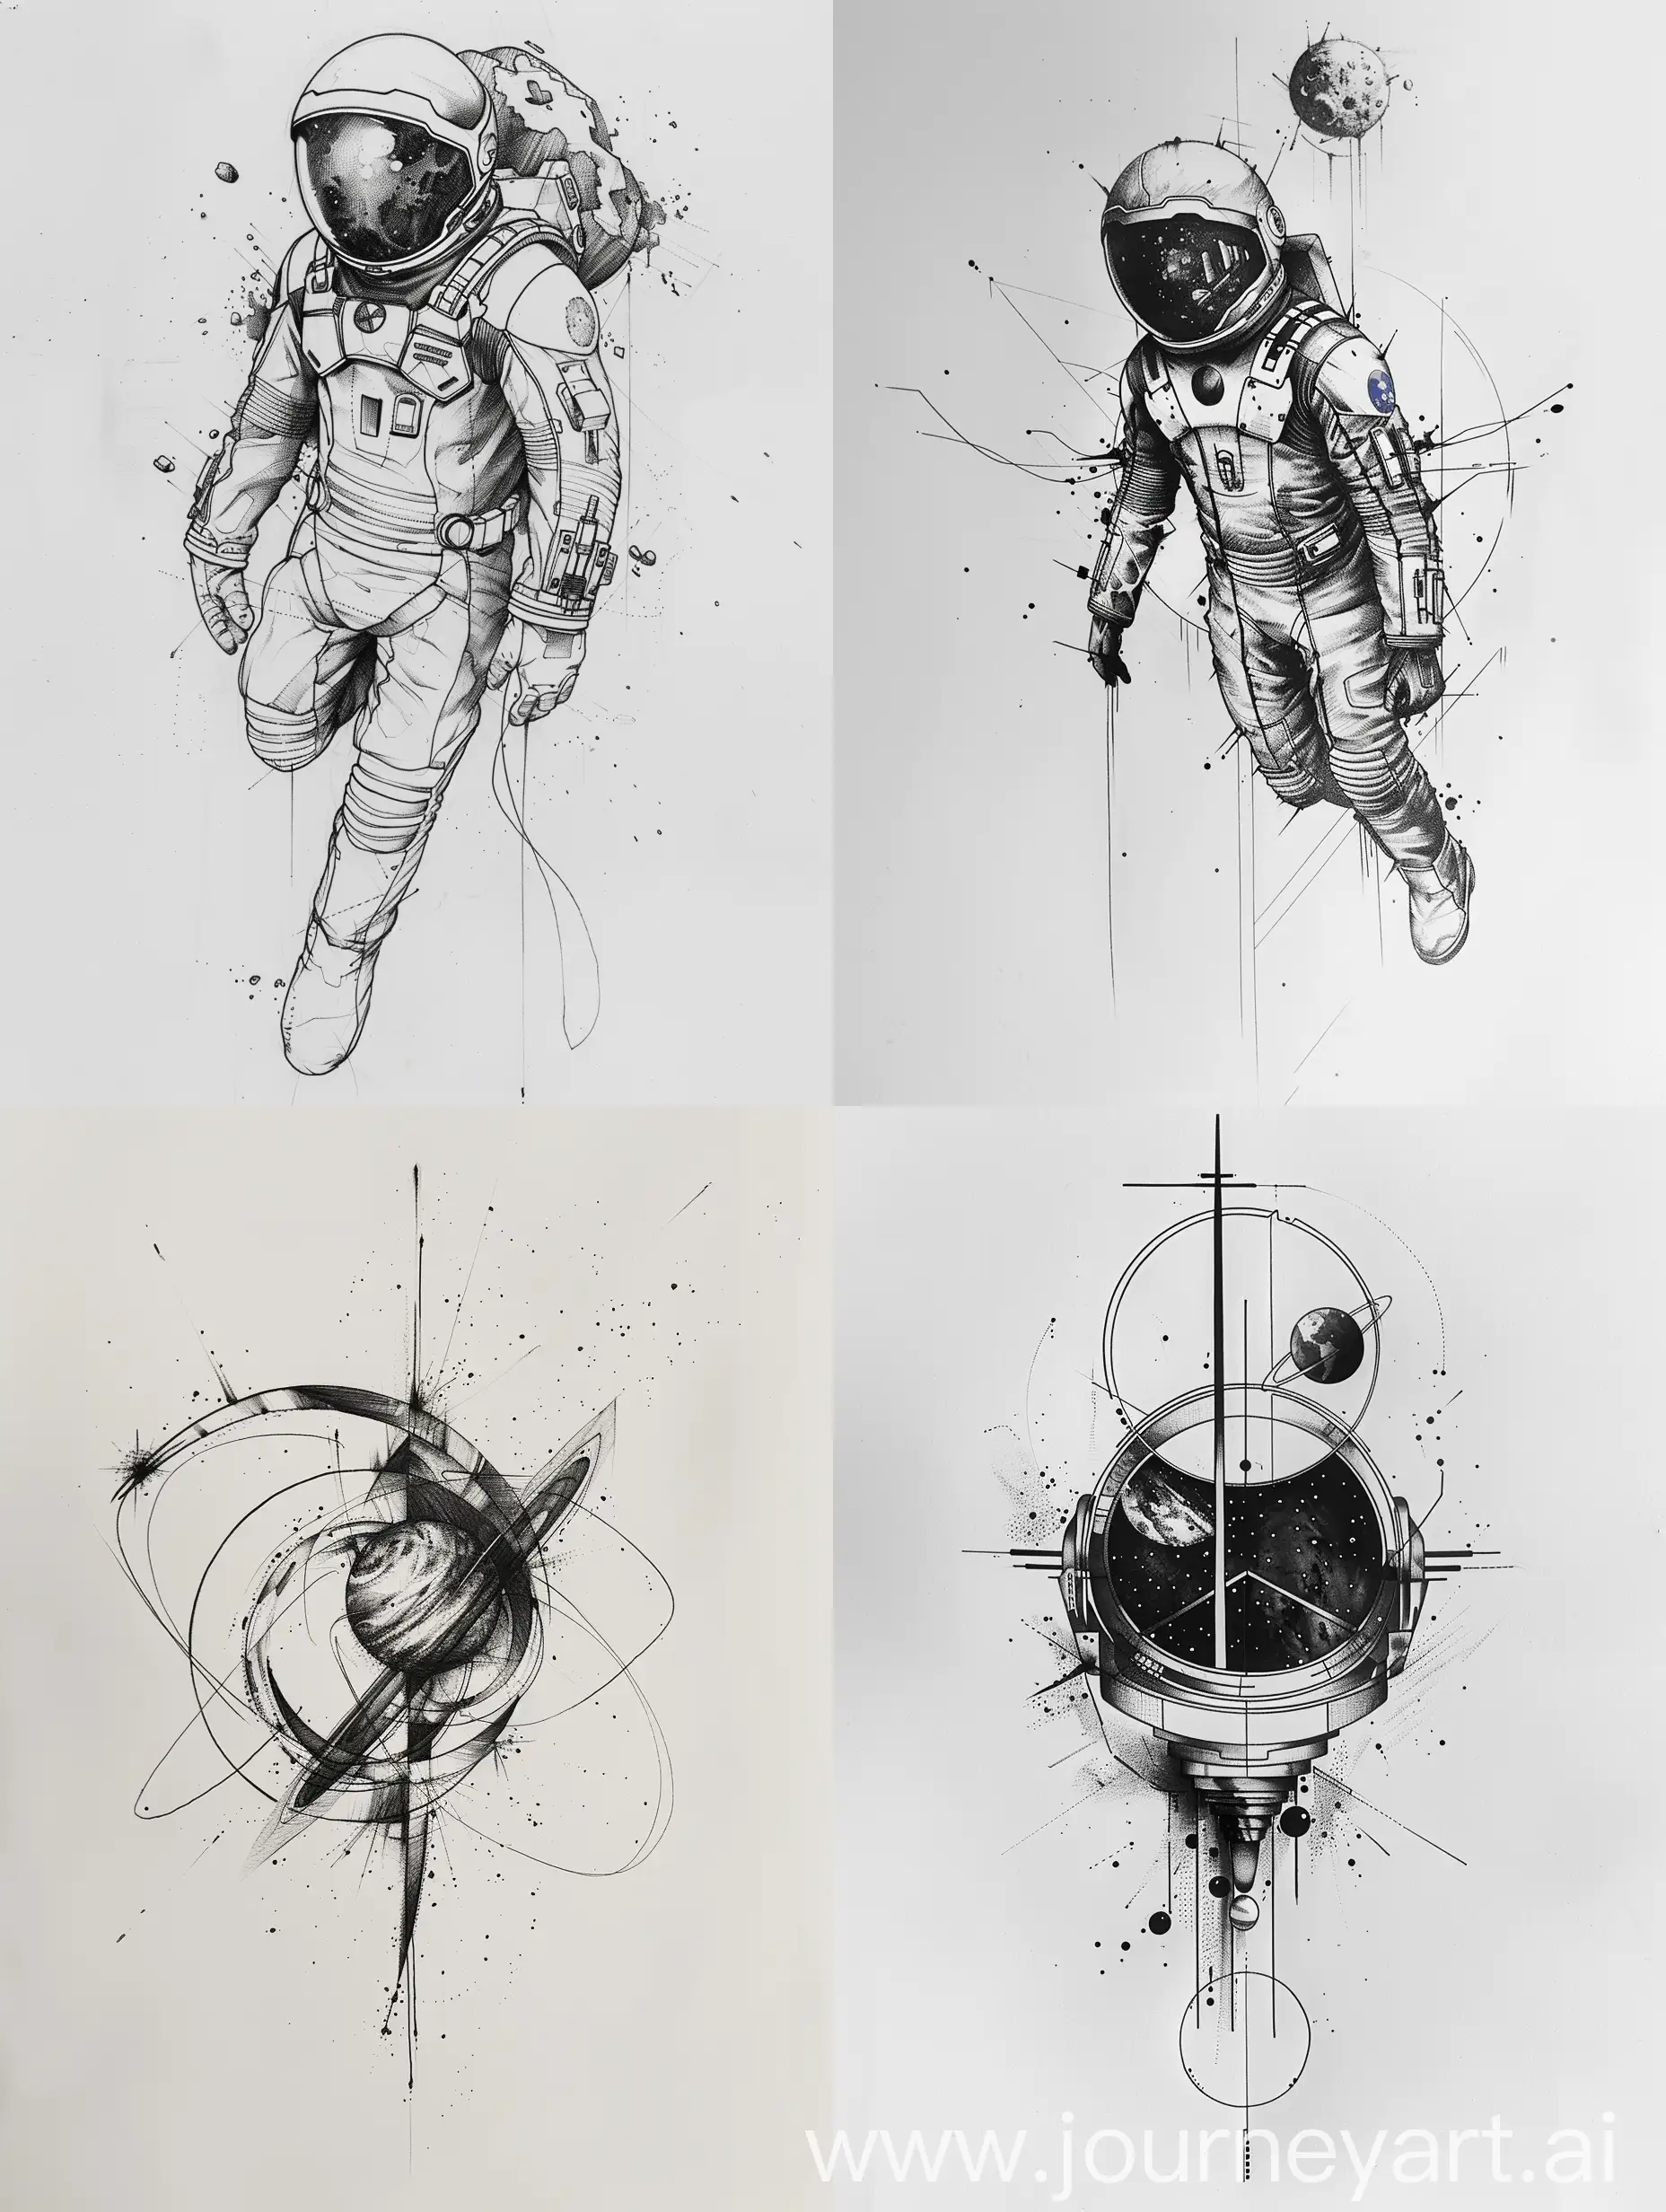 Minimalist-Interstellar-Movie-Tattoo-Design-Sketch-on-White-Background